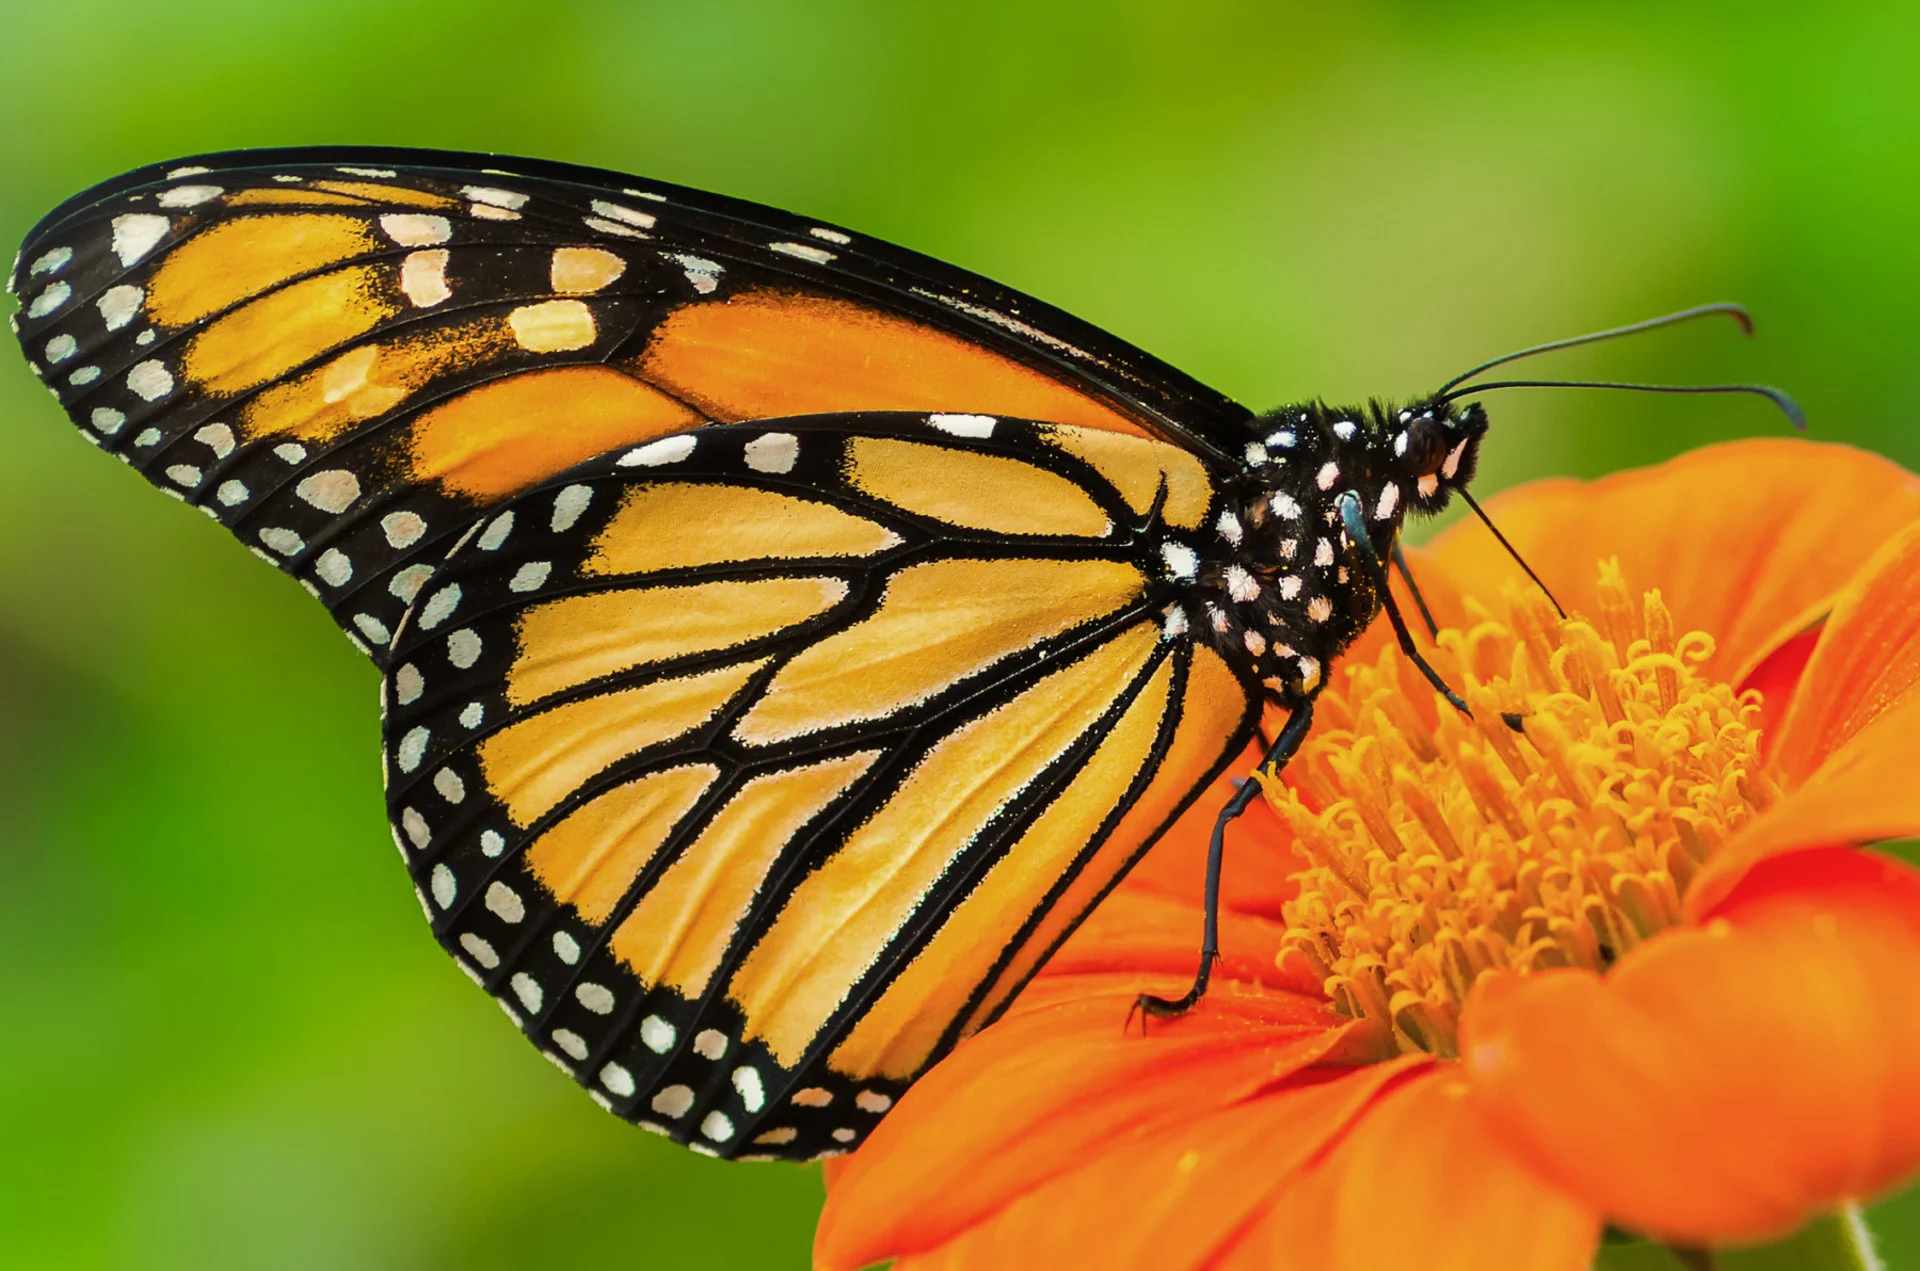 Monarch butterflies face migration challenges as temperatures plummet